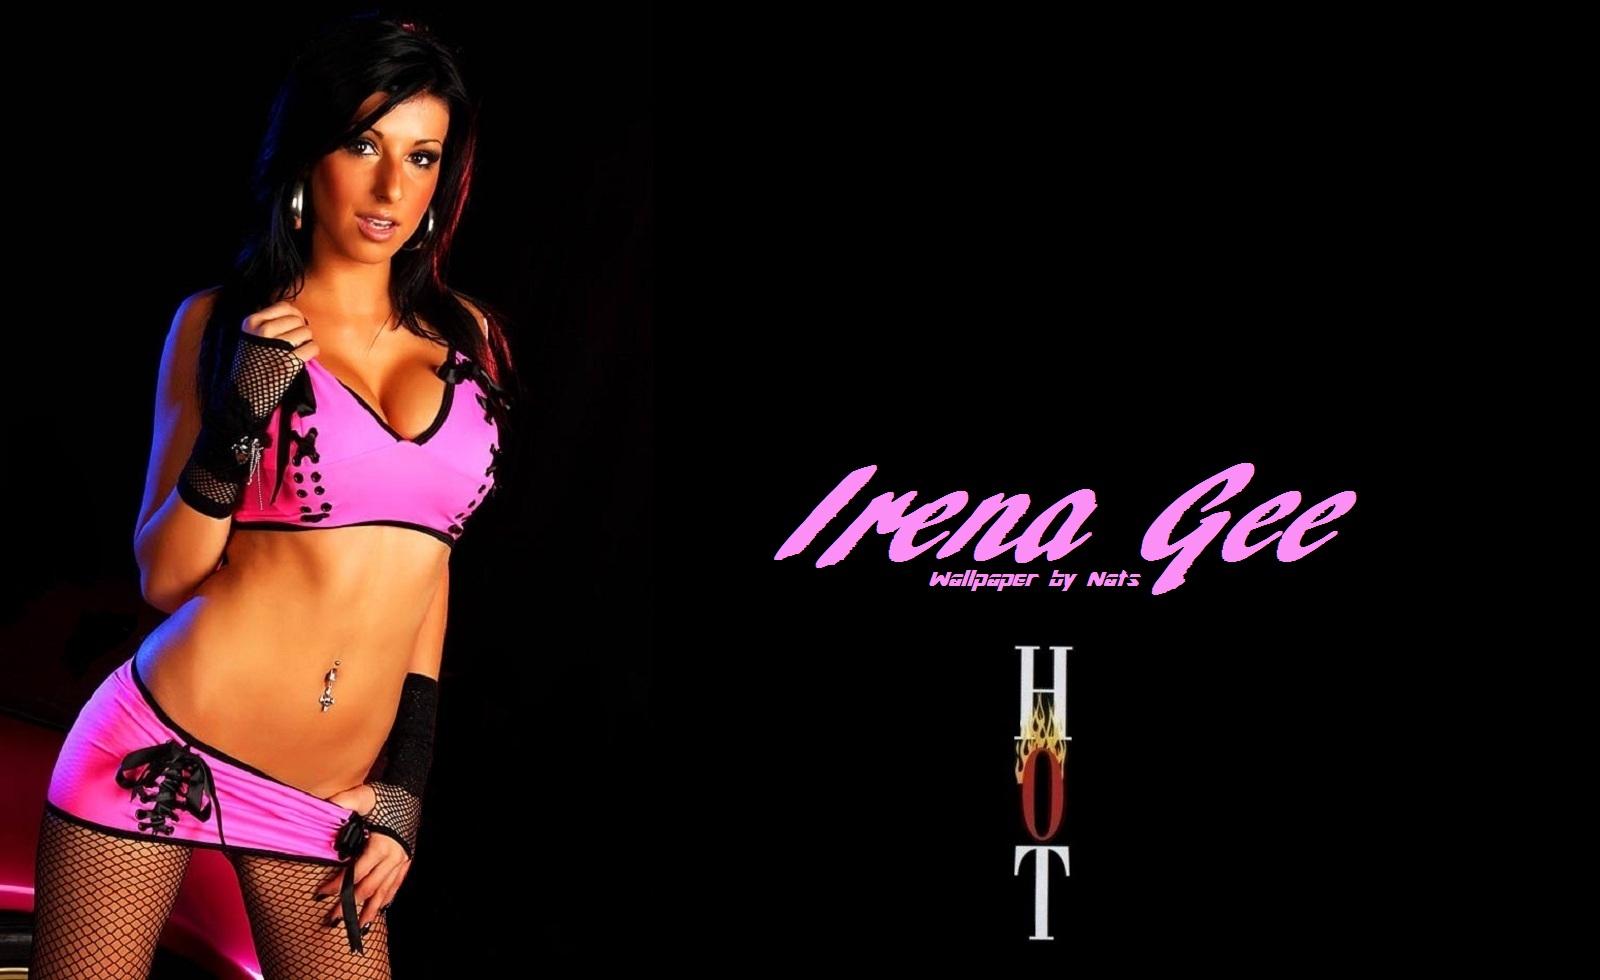 Download HQ Irena Gee wallpaper / Celebrities Female / 1600x980